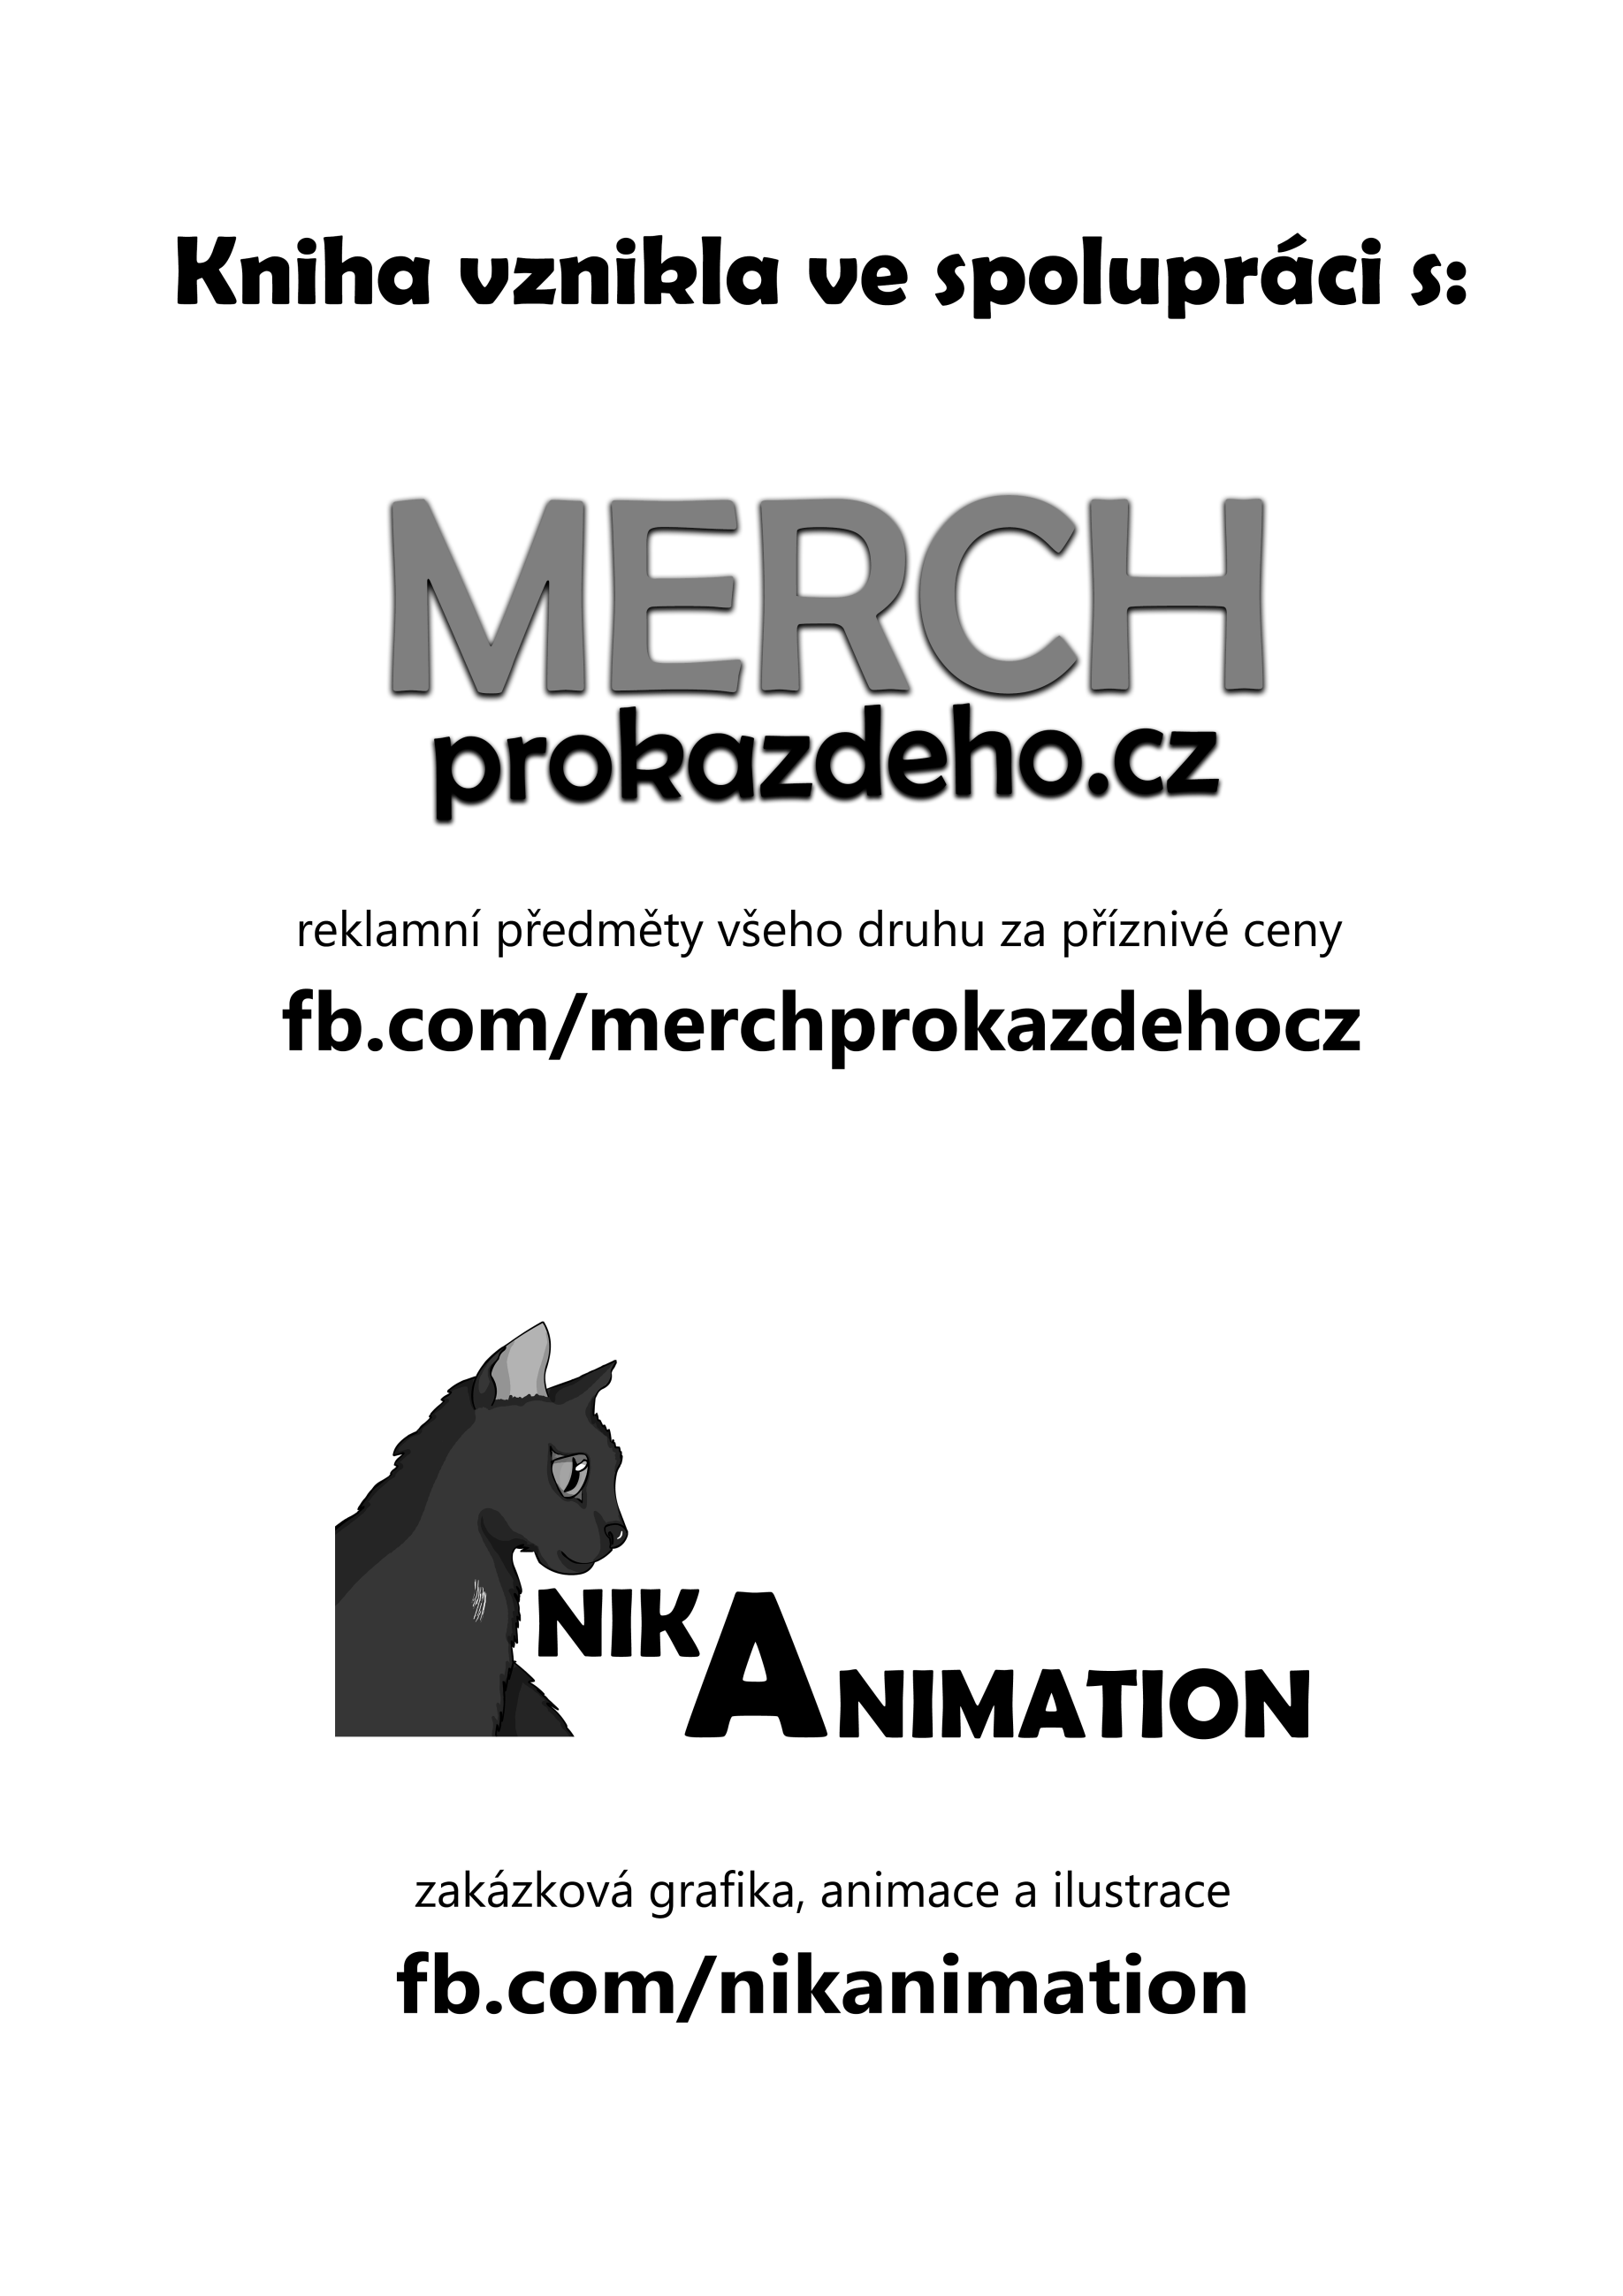 Partnerem projektu je MERCH prokazdeho.cz